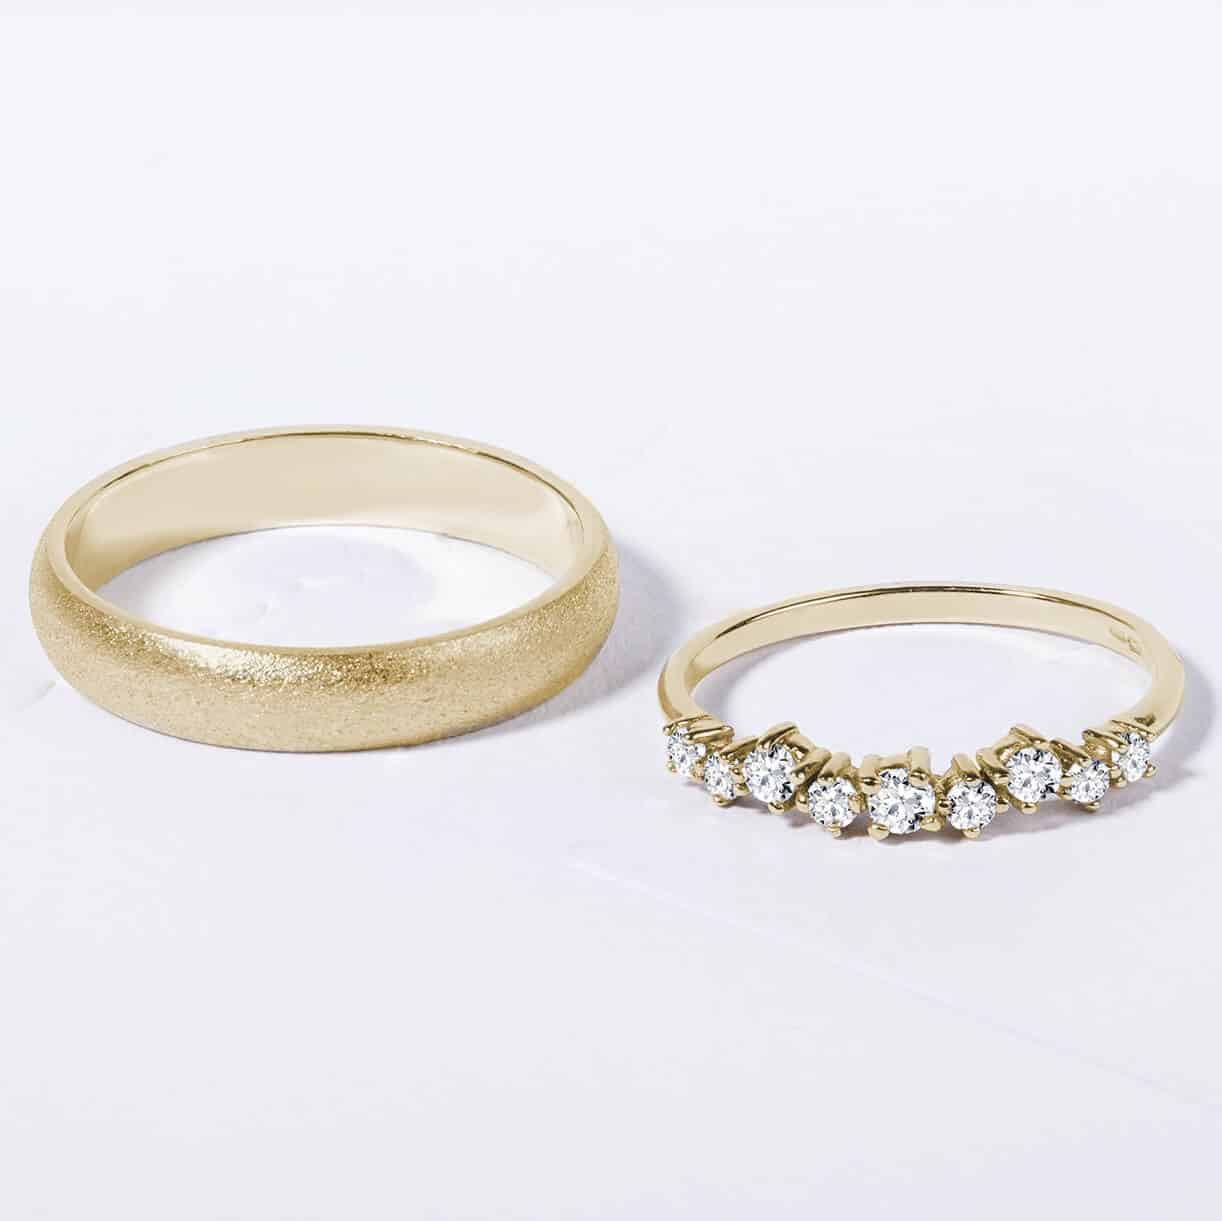 Snubní prsteny pár zlato žluté matné a lesklé s diamanty 4 zn. Klenota